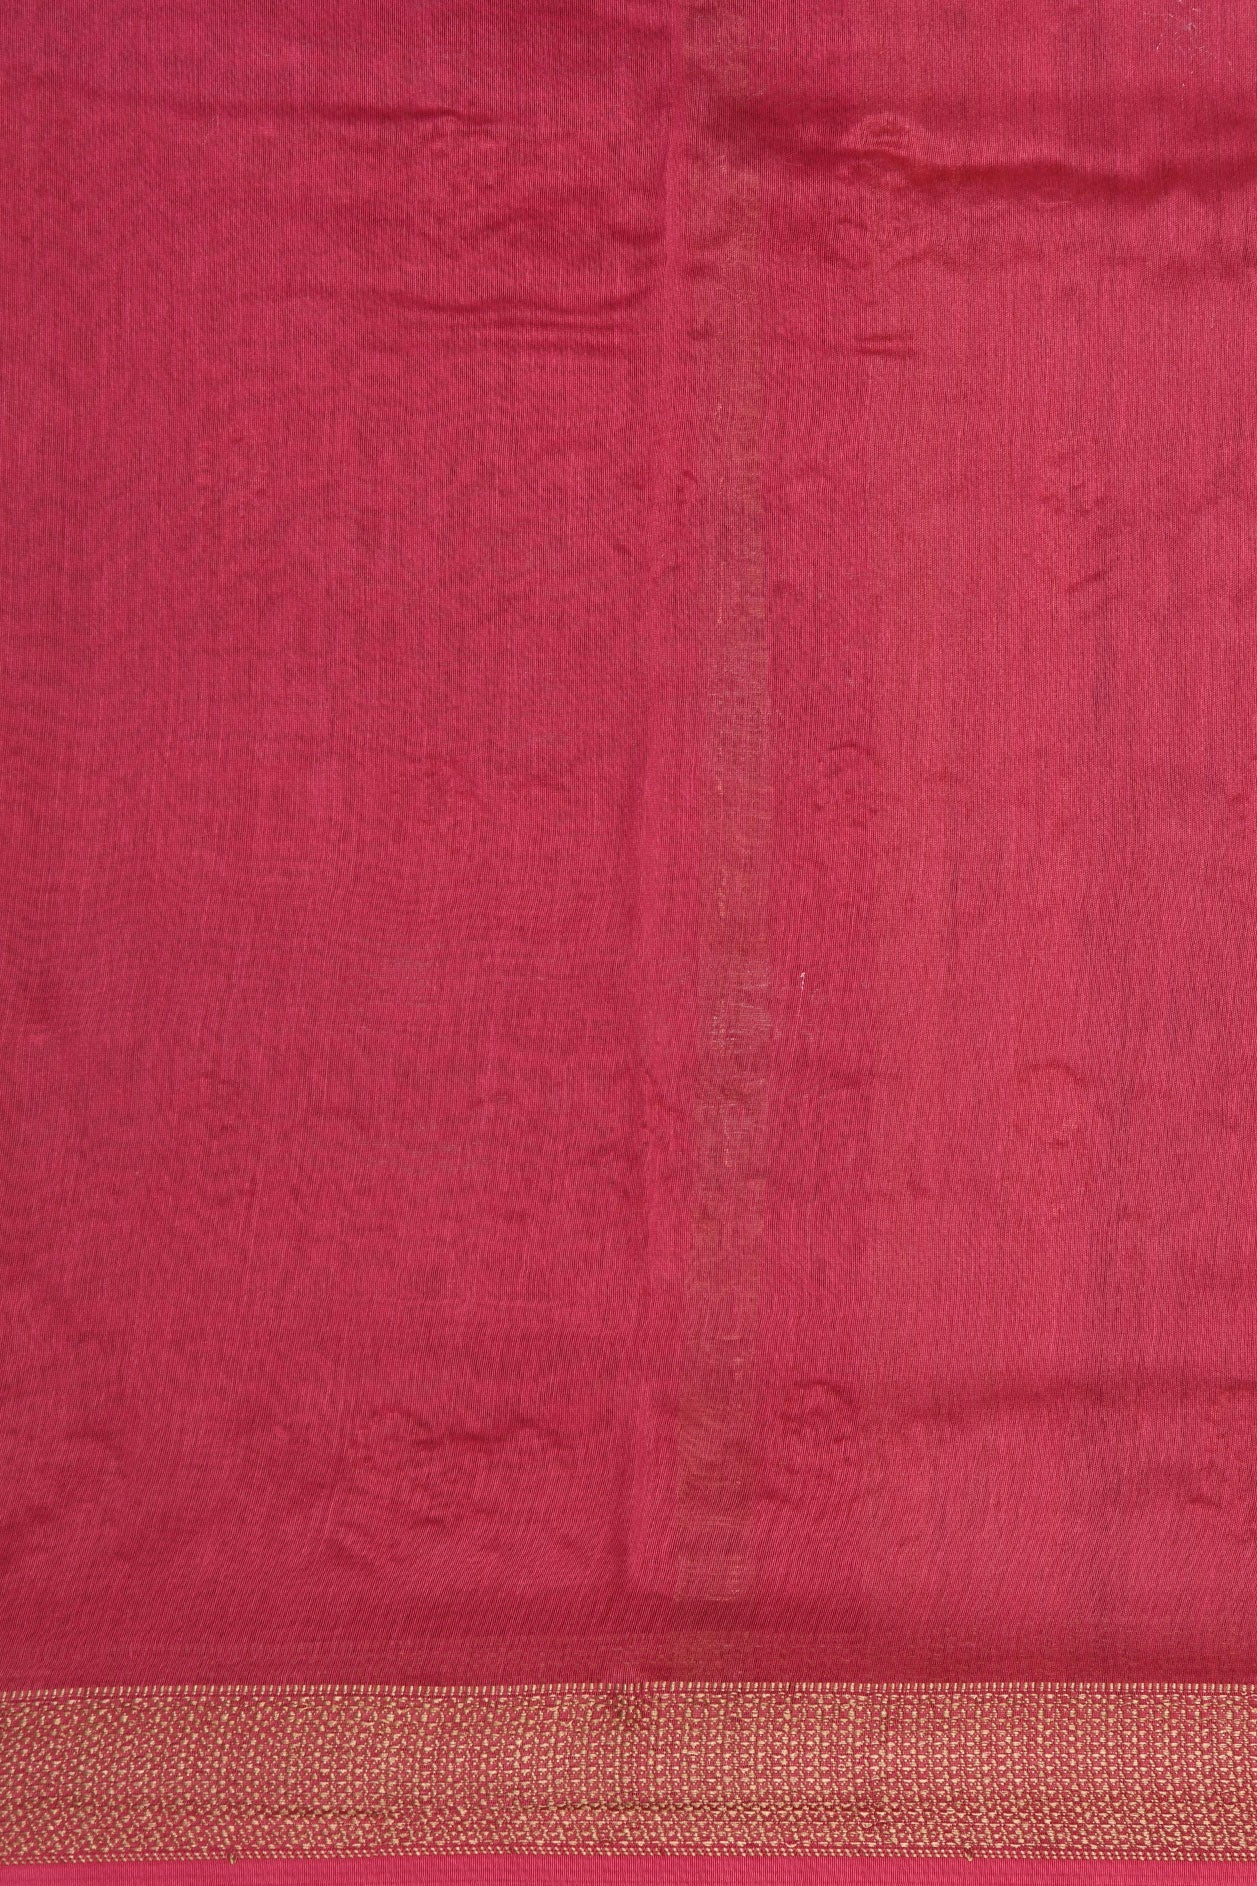 Embroidered Floral Design Magenta Pink Chanderi Silk Cotton Saree